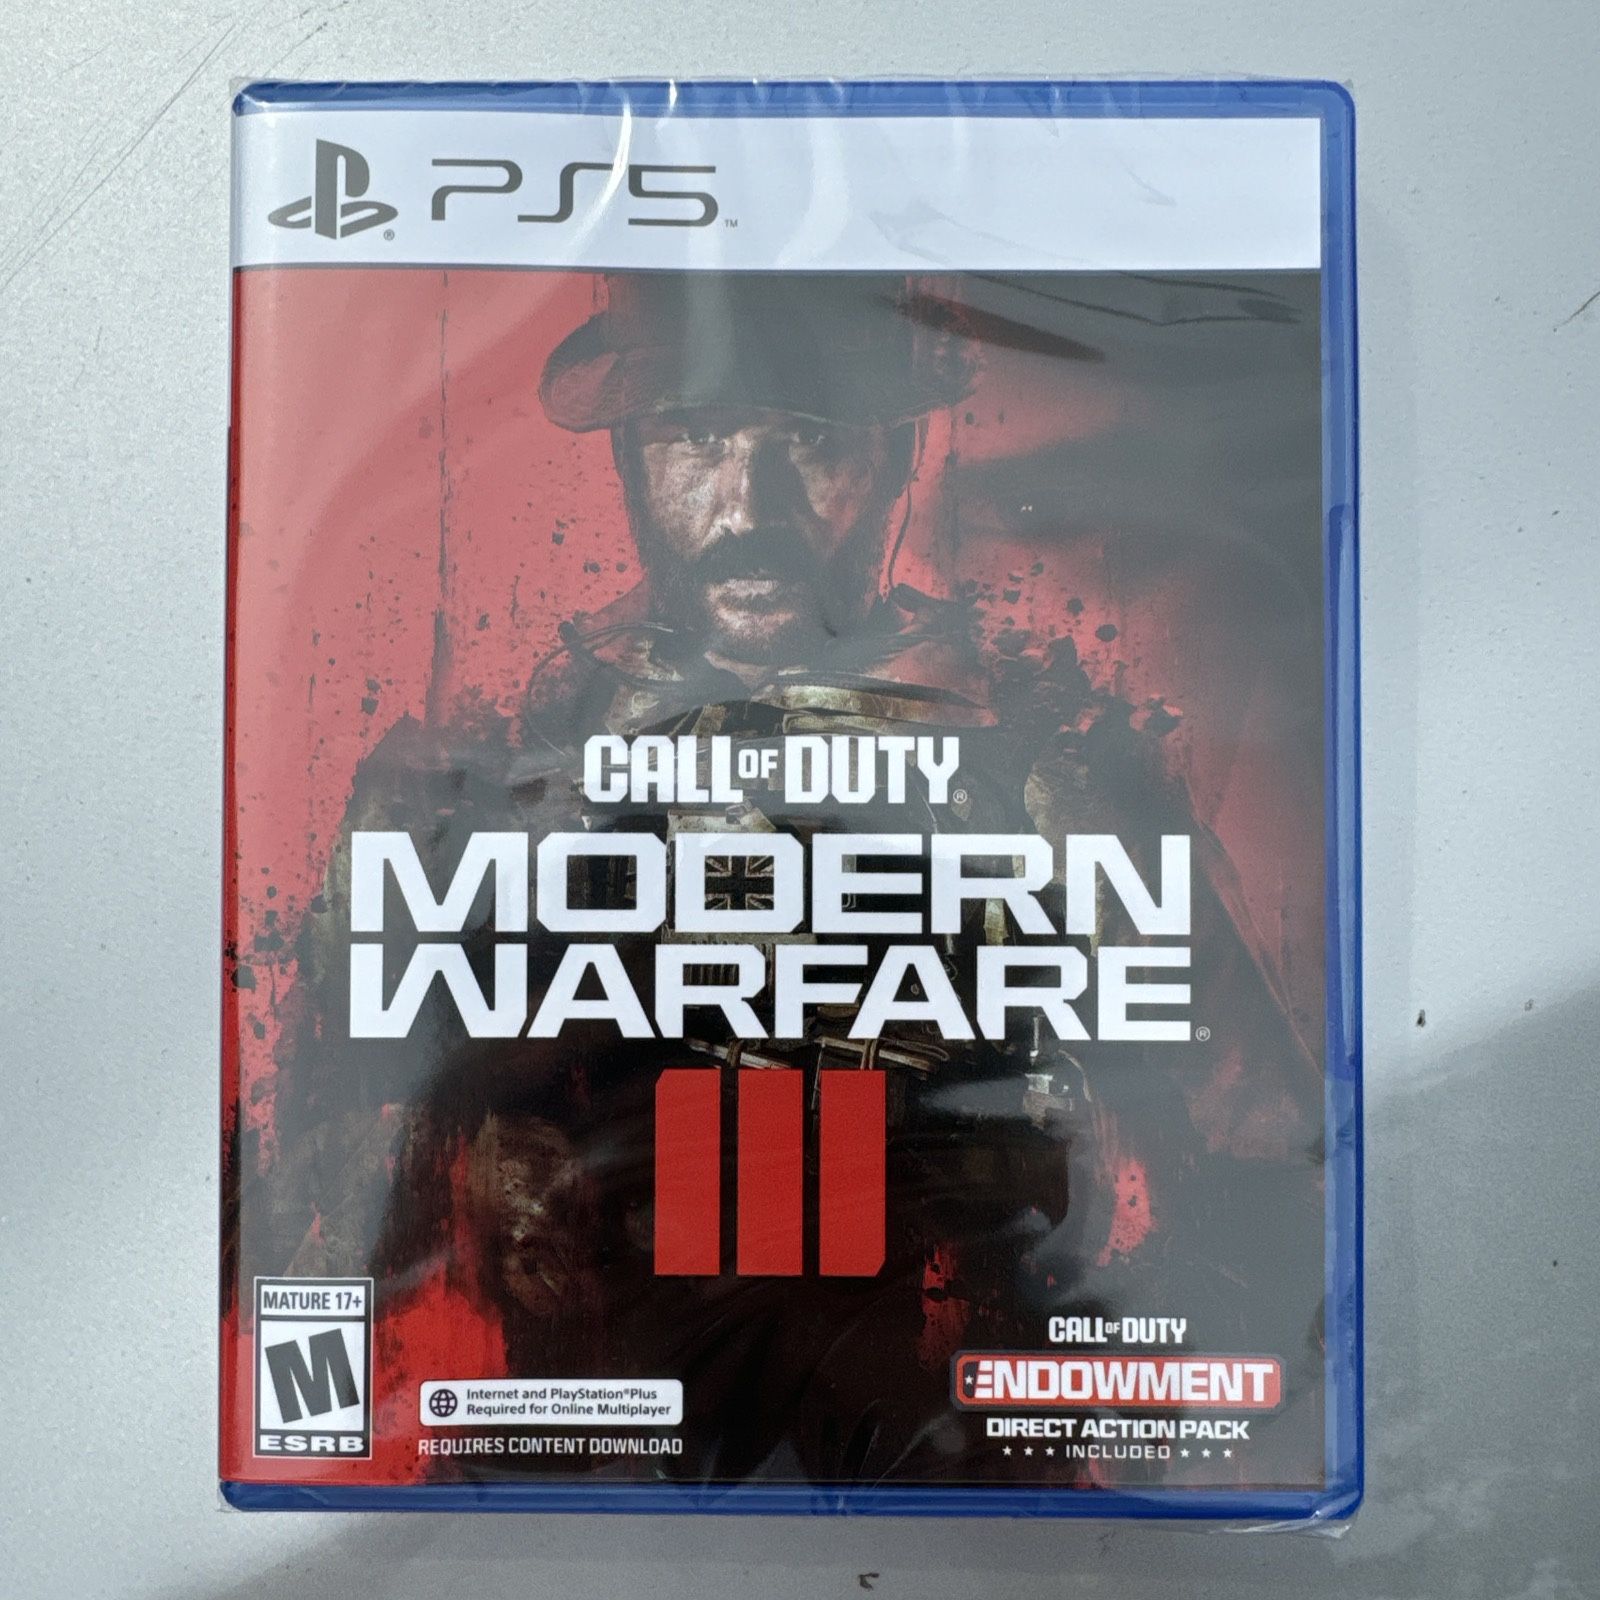 COD Call of Duty: Modern Warfare 3 Standard Edition (Sony PlayStation 5 PS5) NEW